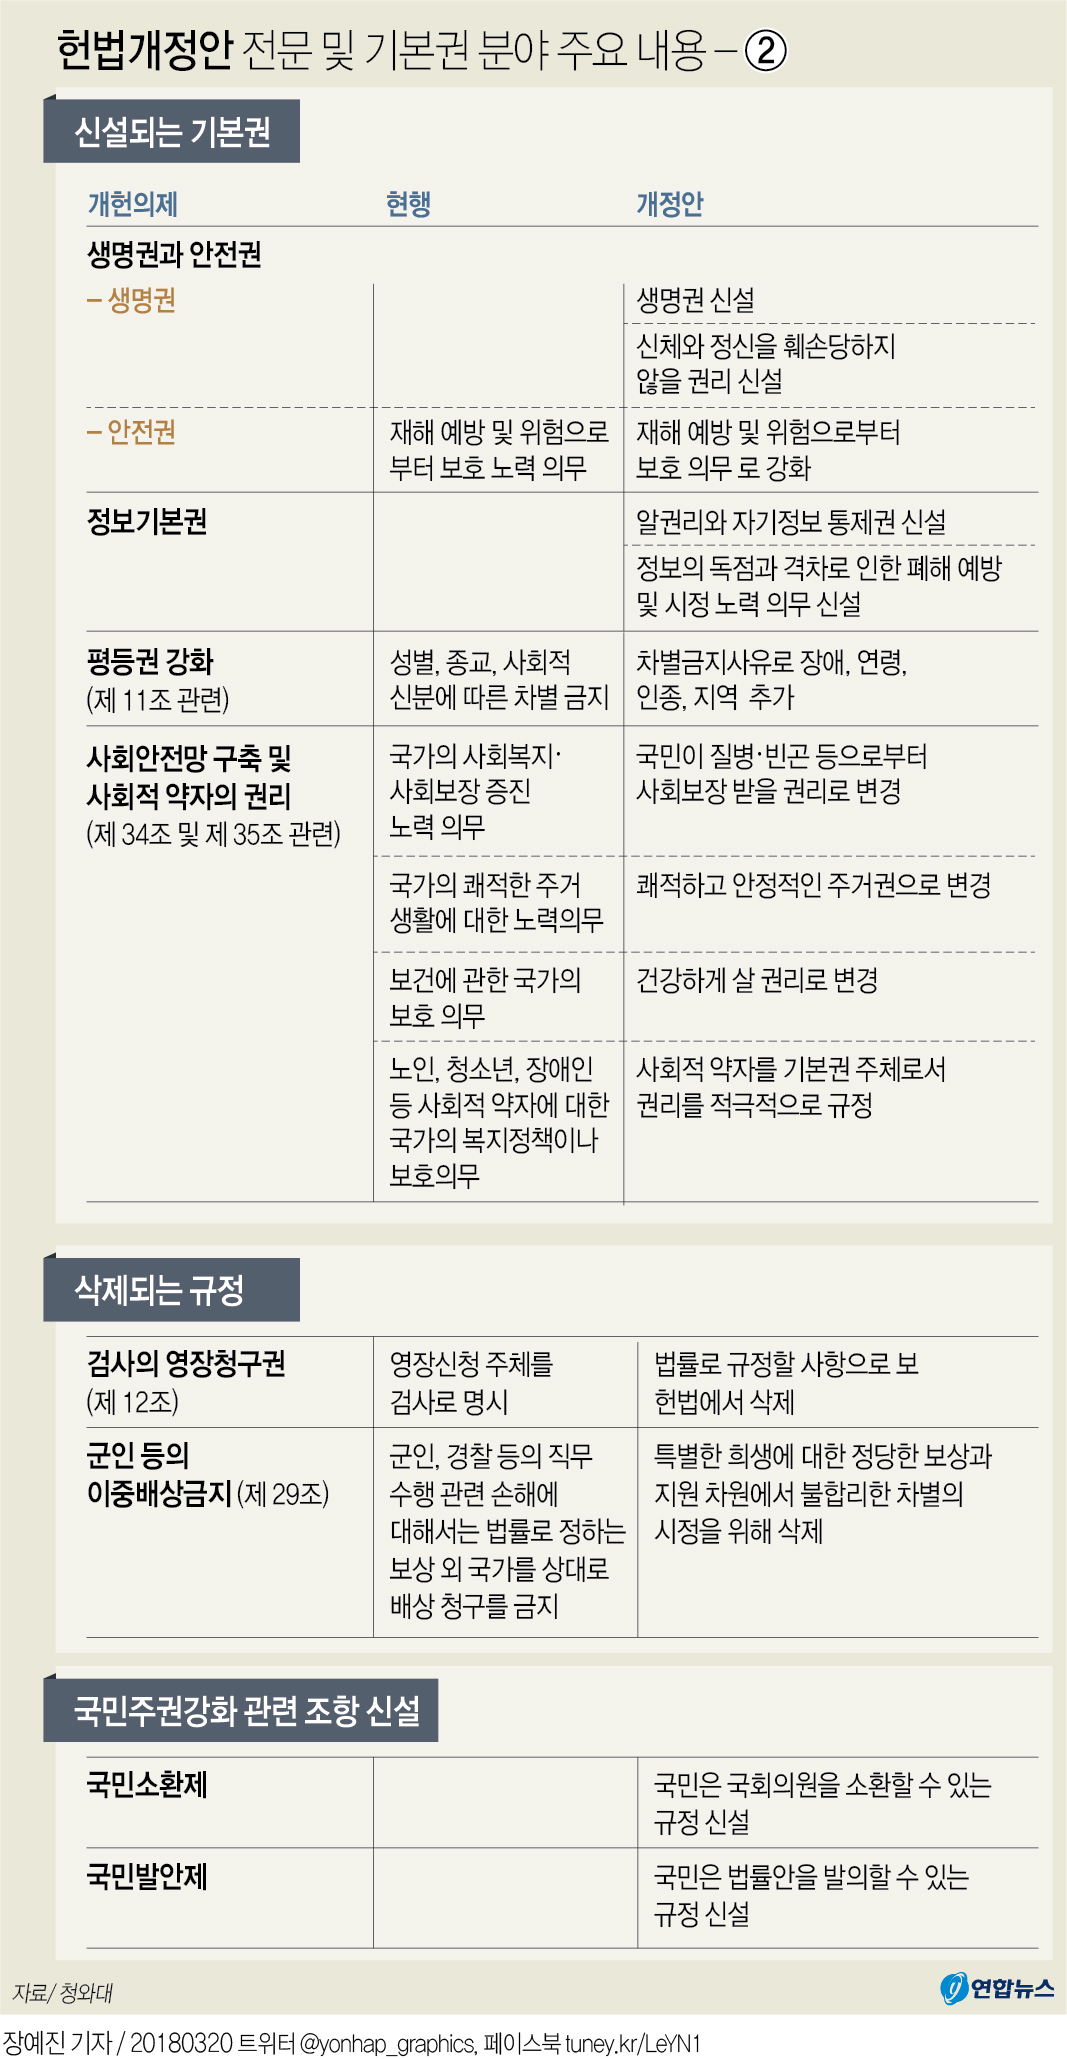 [그래픽] 헌법개정안 전문 및 기본권 분야 주요 내용- ②